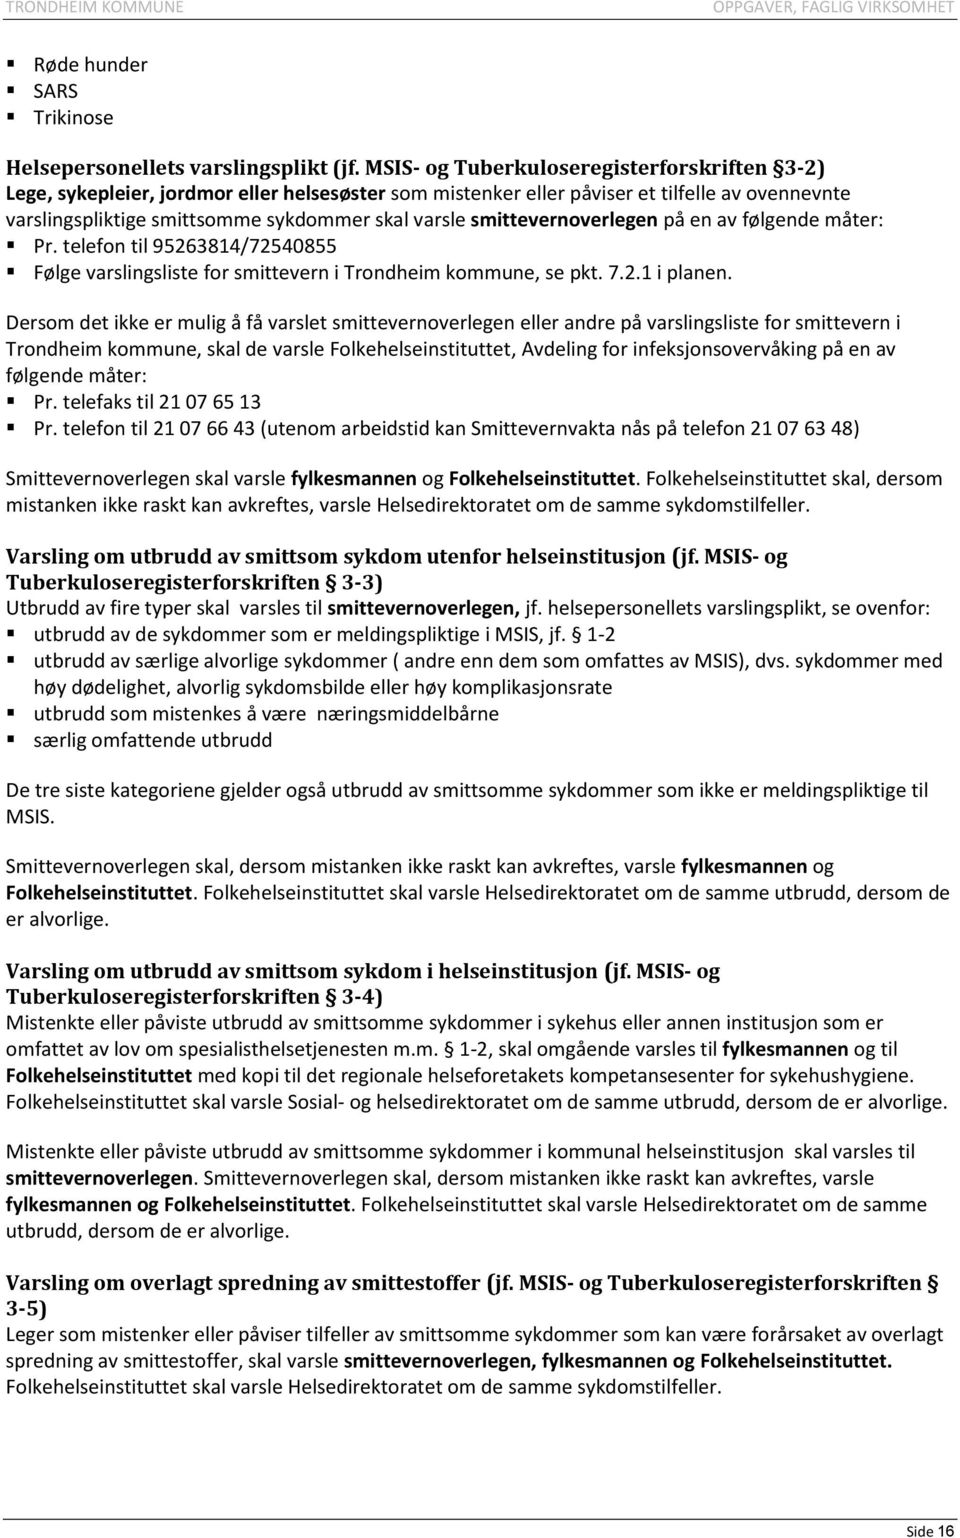 smittevernoverlegen på en av følgende måter: Pr. telefon til 95263814/72540855 Følge varslingsliste for smittevern i Trondheim kommune, se pkt. 7.2.1 i planen.